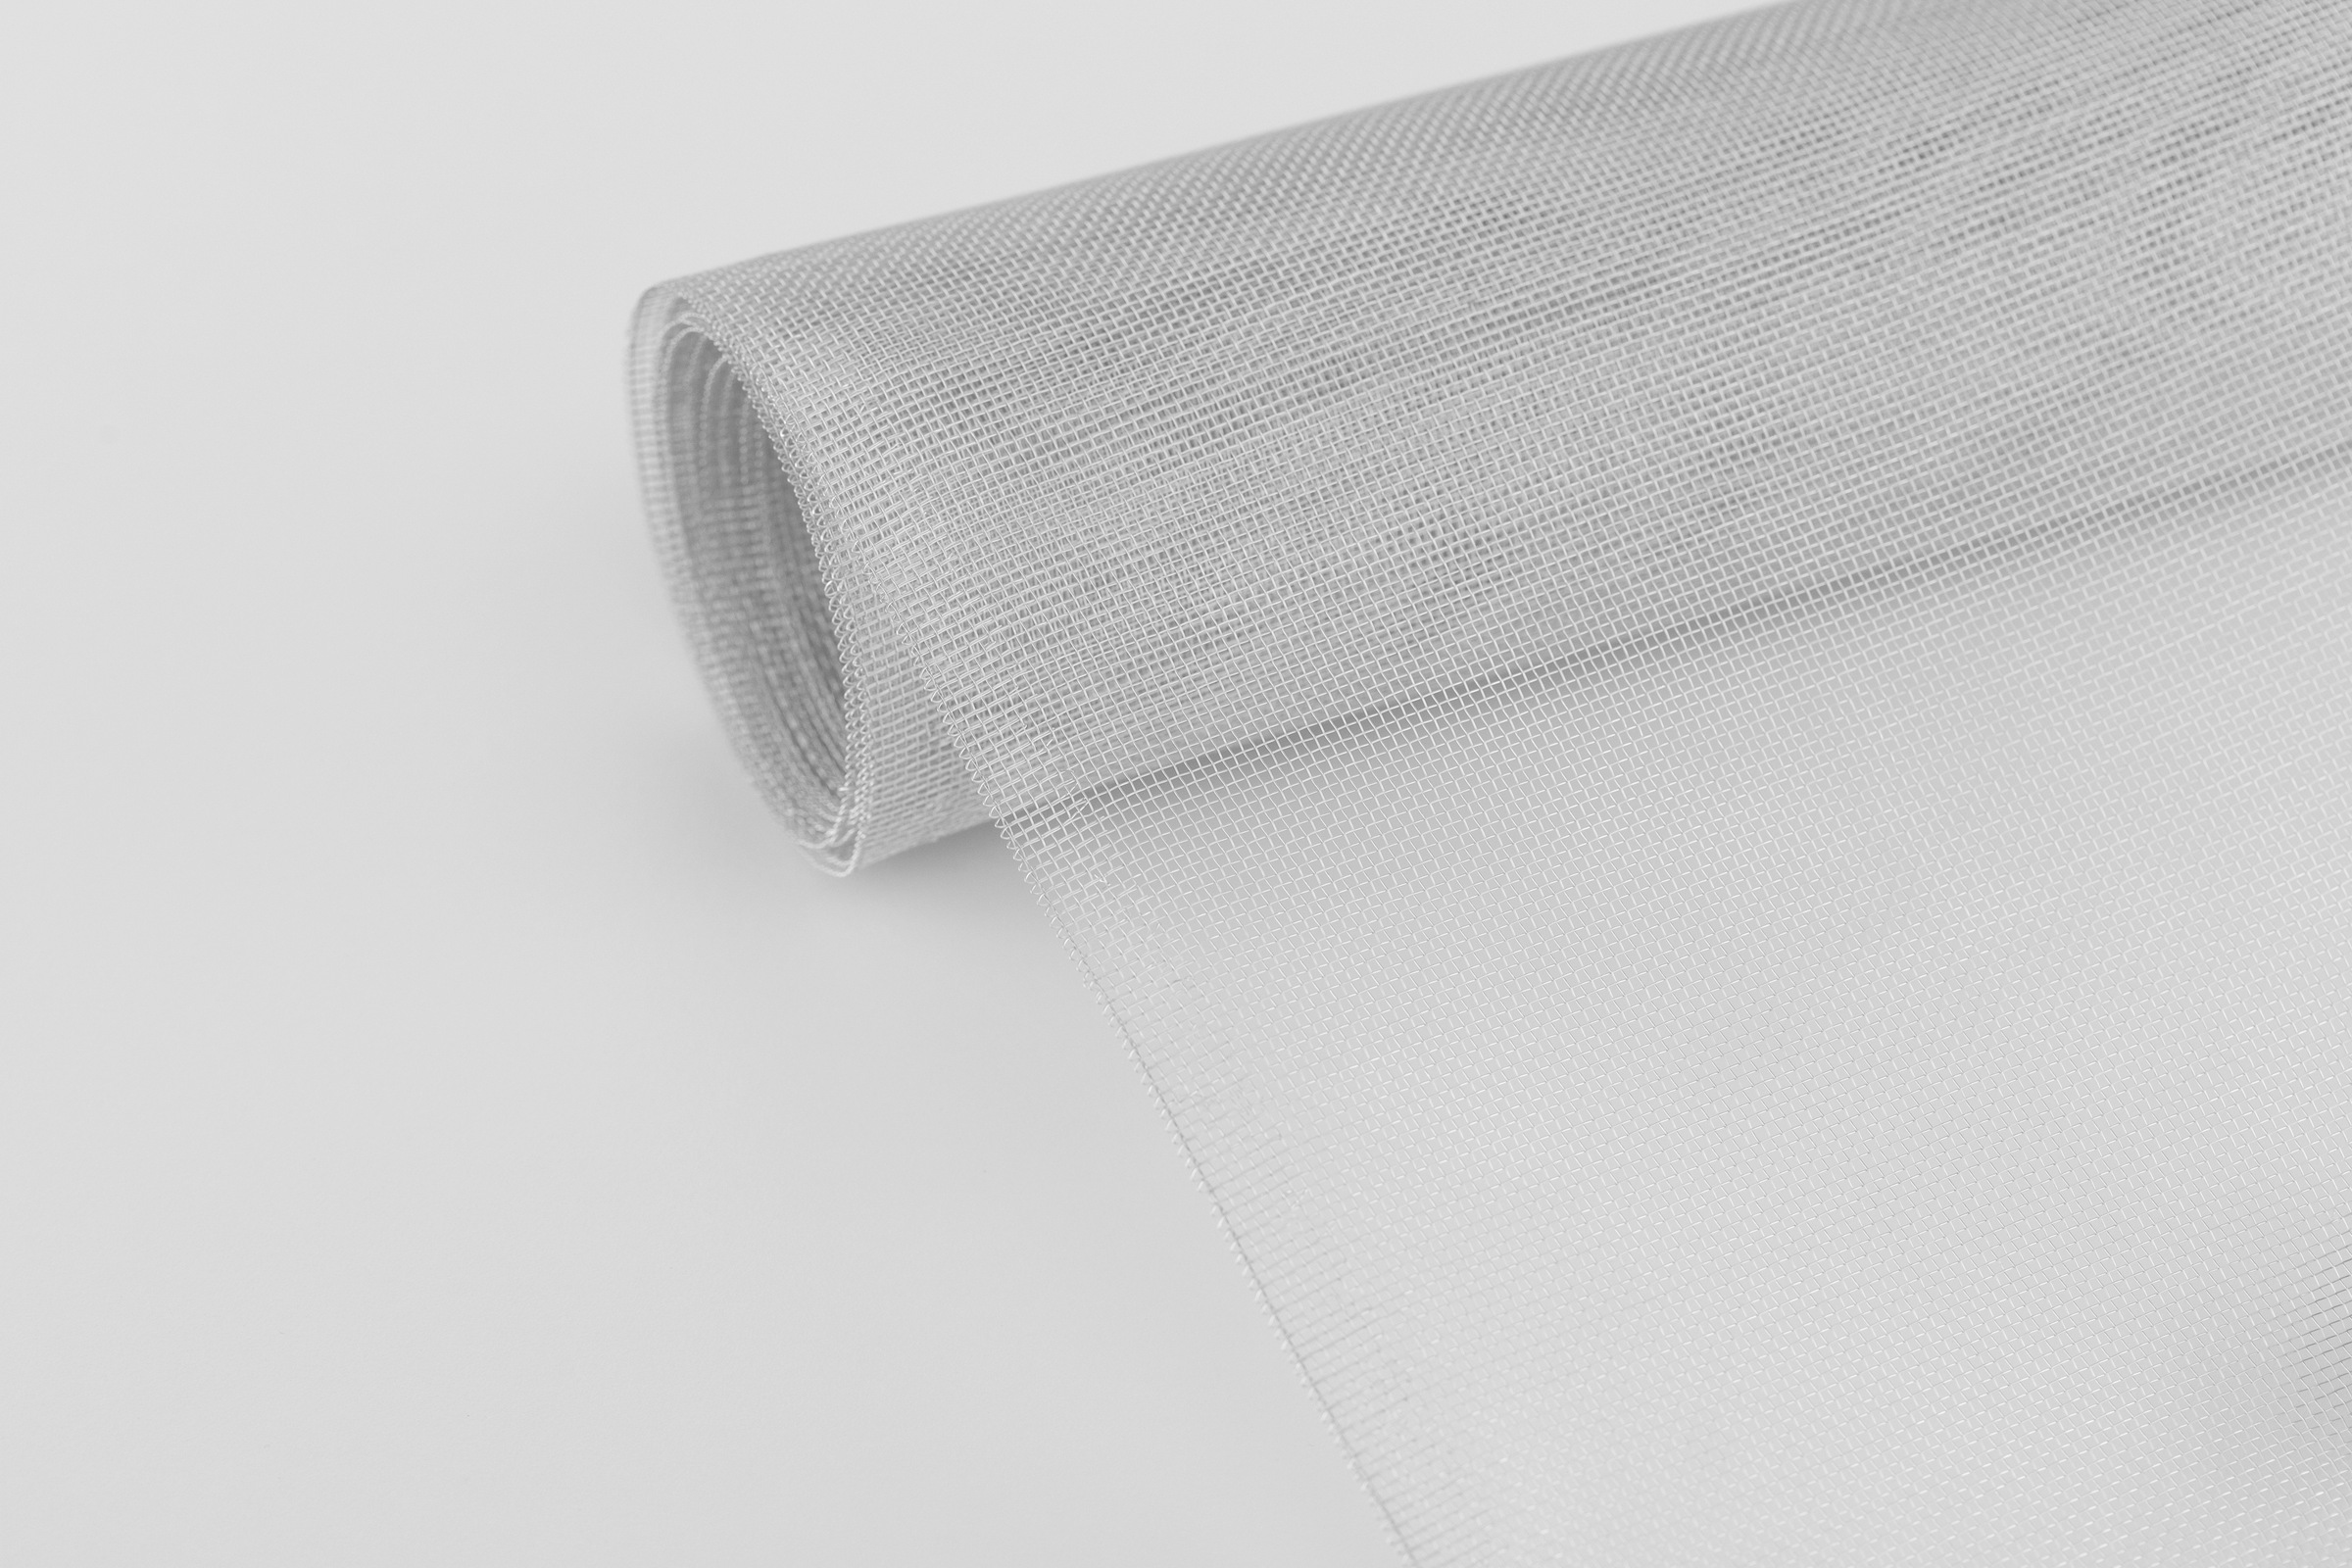 SCHELLENBERG Fliegengitter-Gewebe »aus Aluminium«, Insektenschutz Rolle zum selbst zuschneiden, 100 x 120 cm, 58200